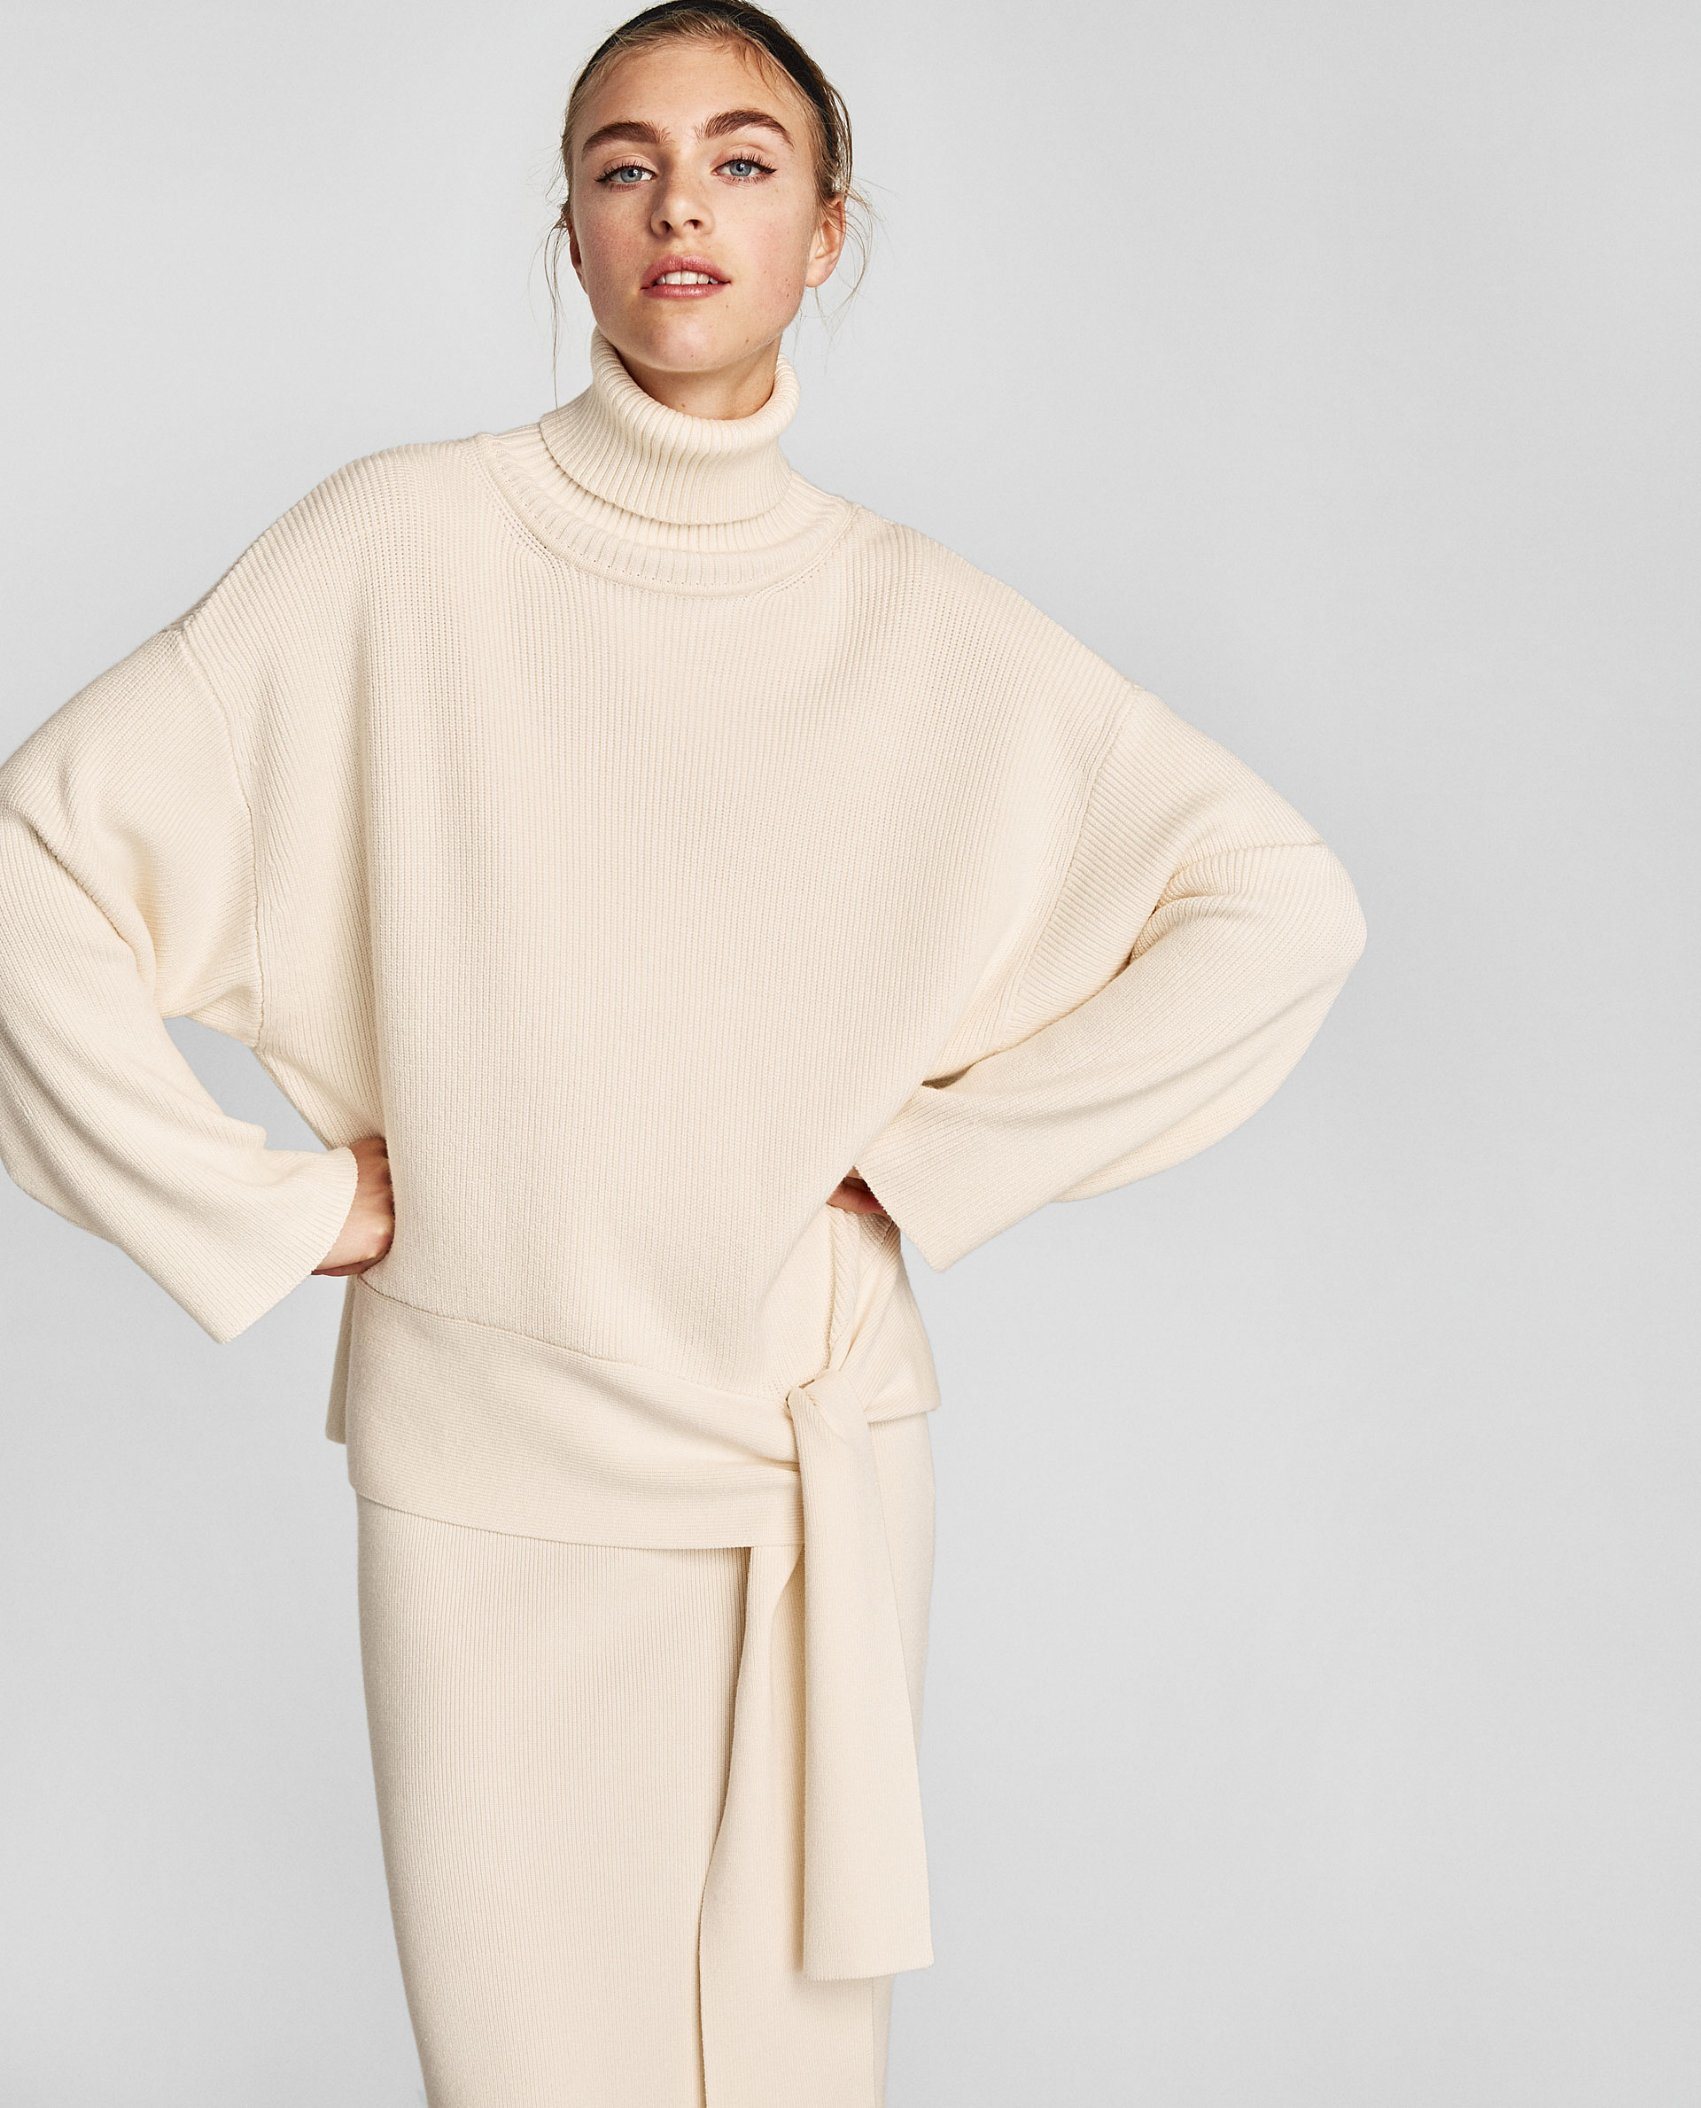 Fashion Style Winter Woman Wool Sweater Dress (RS-034)